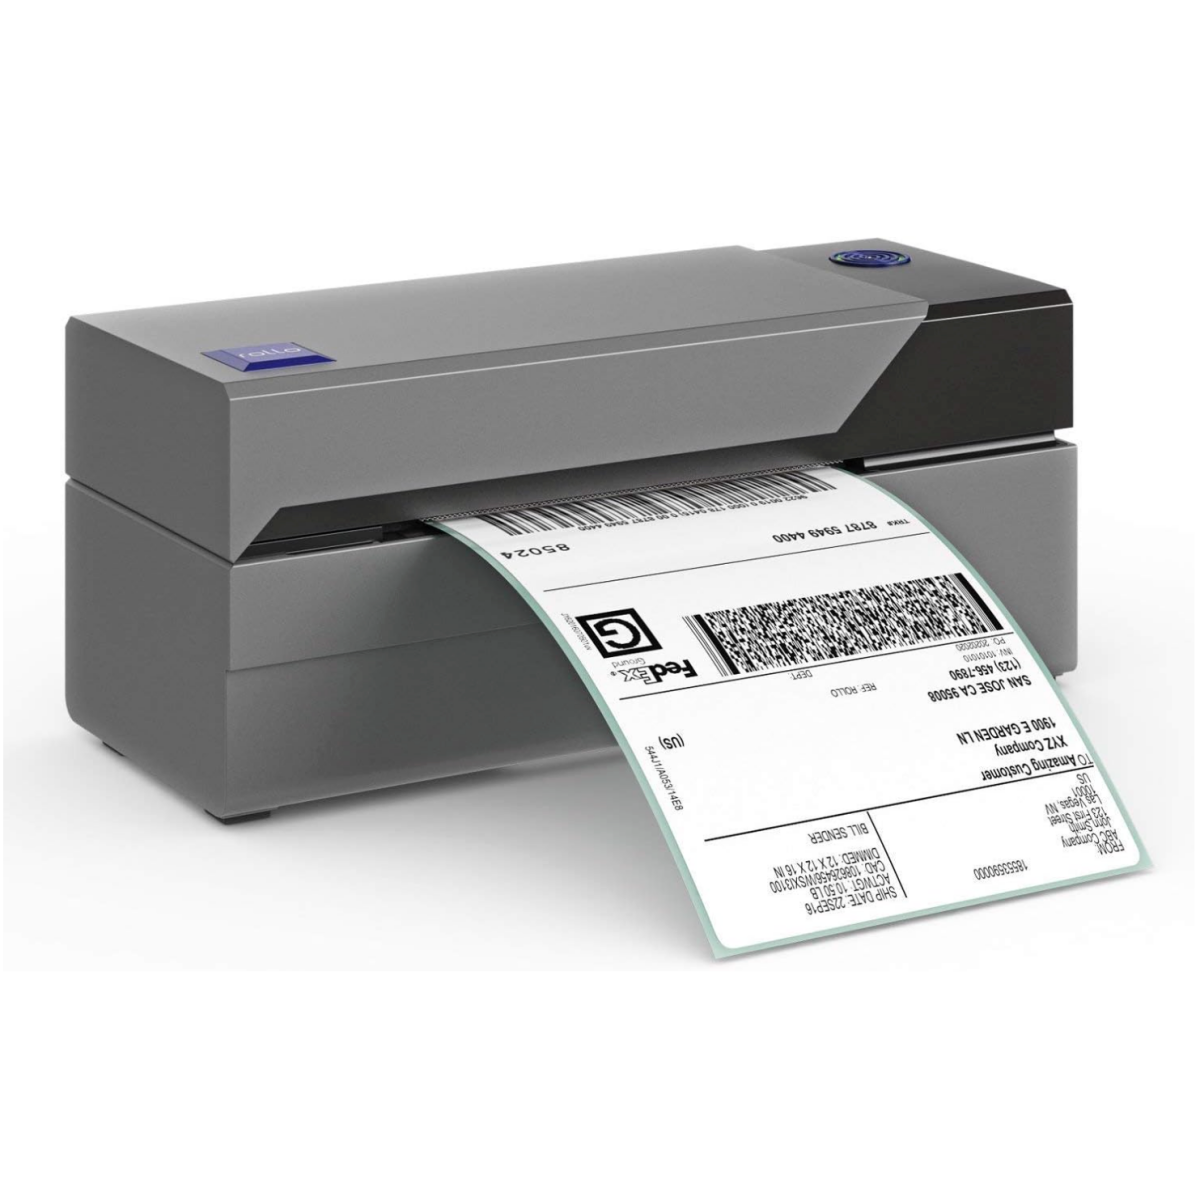 A Rollo USB Shipping Label Printer printing a monochrome label